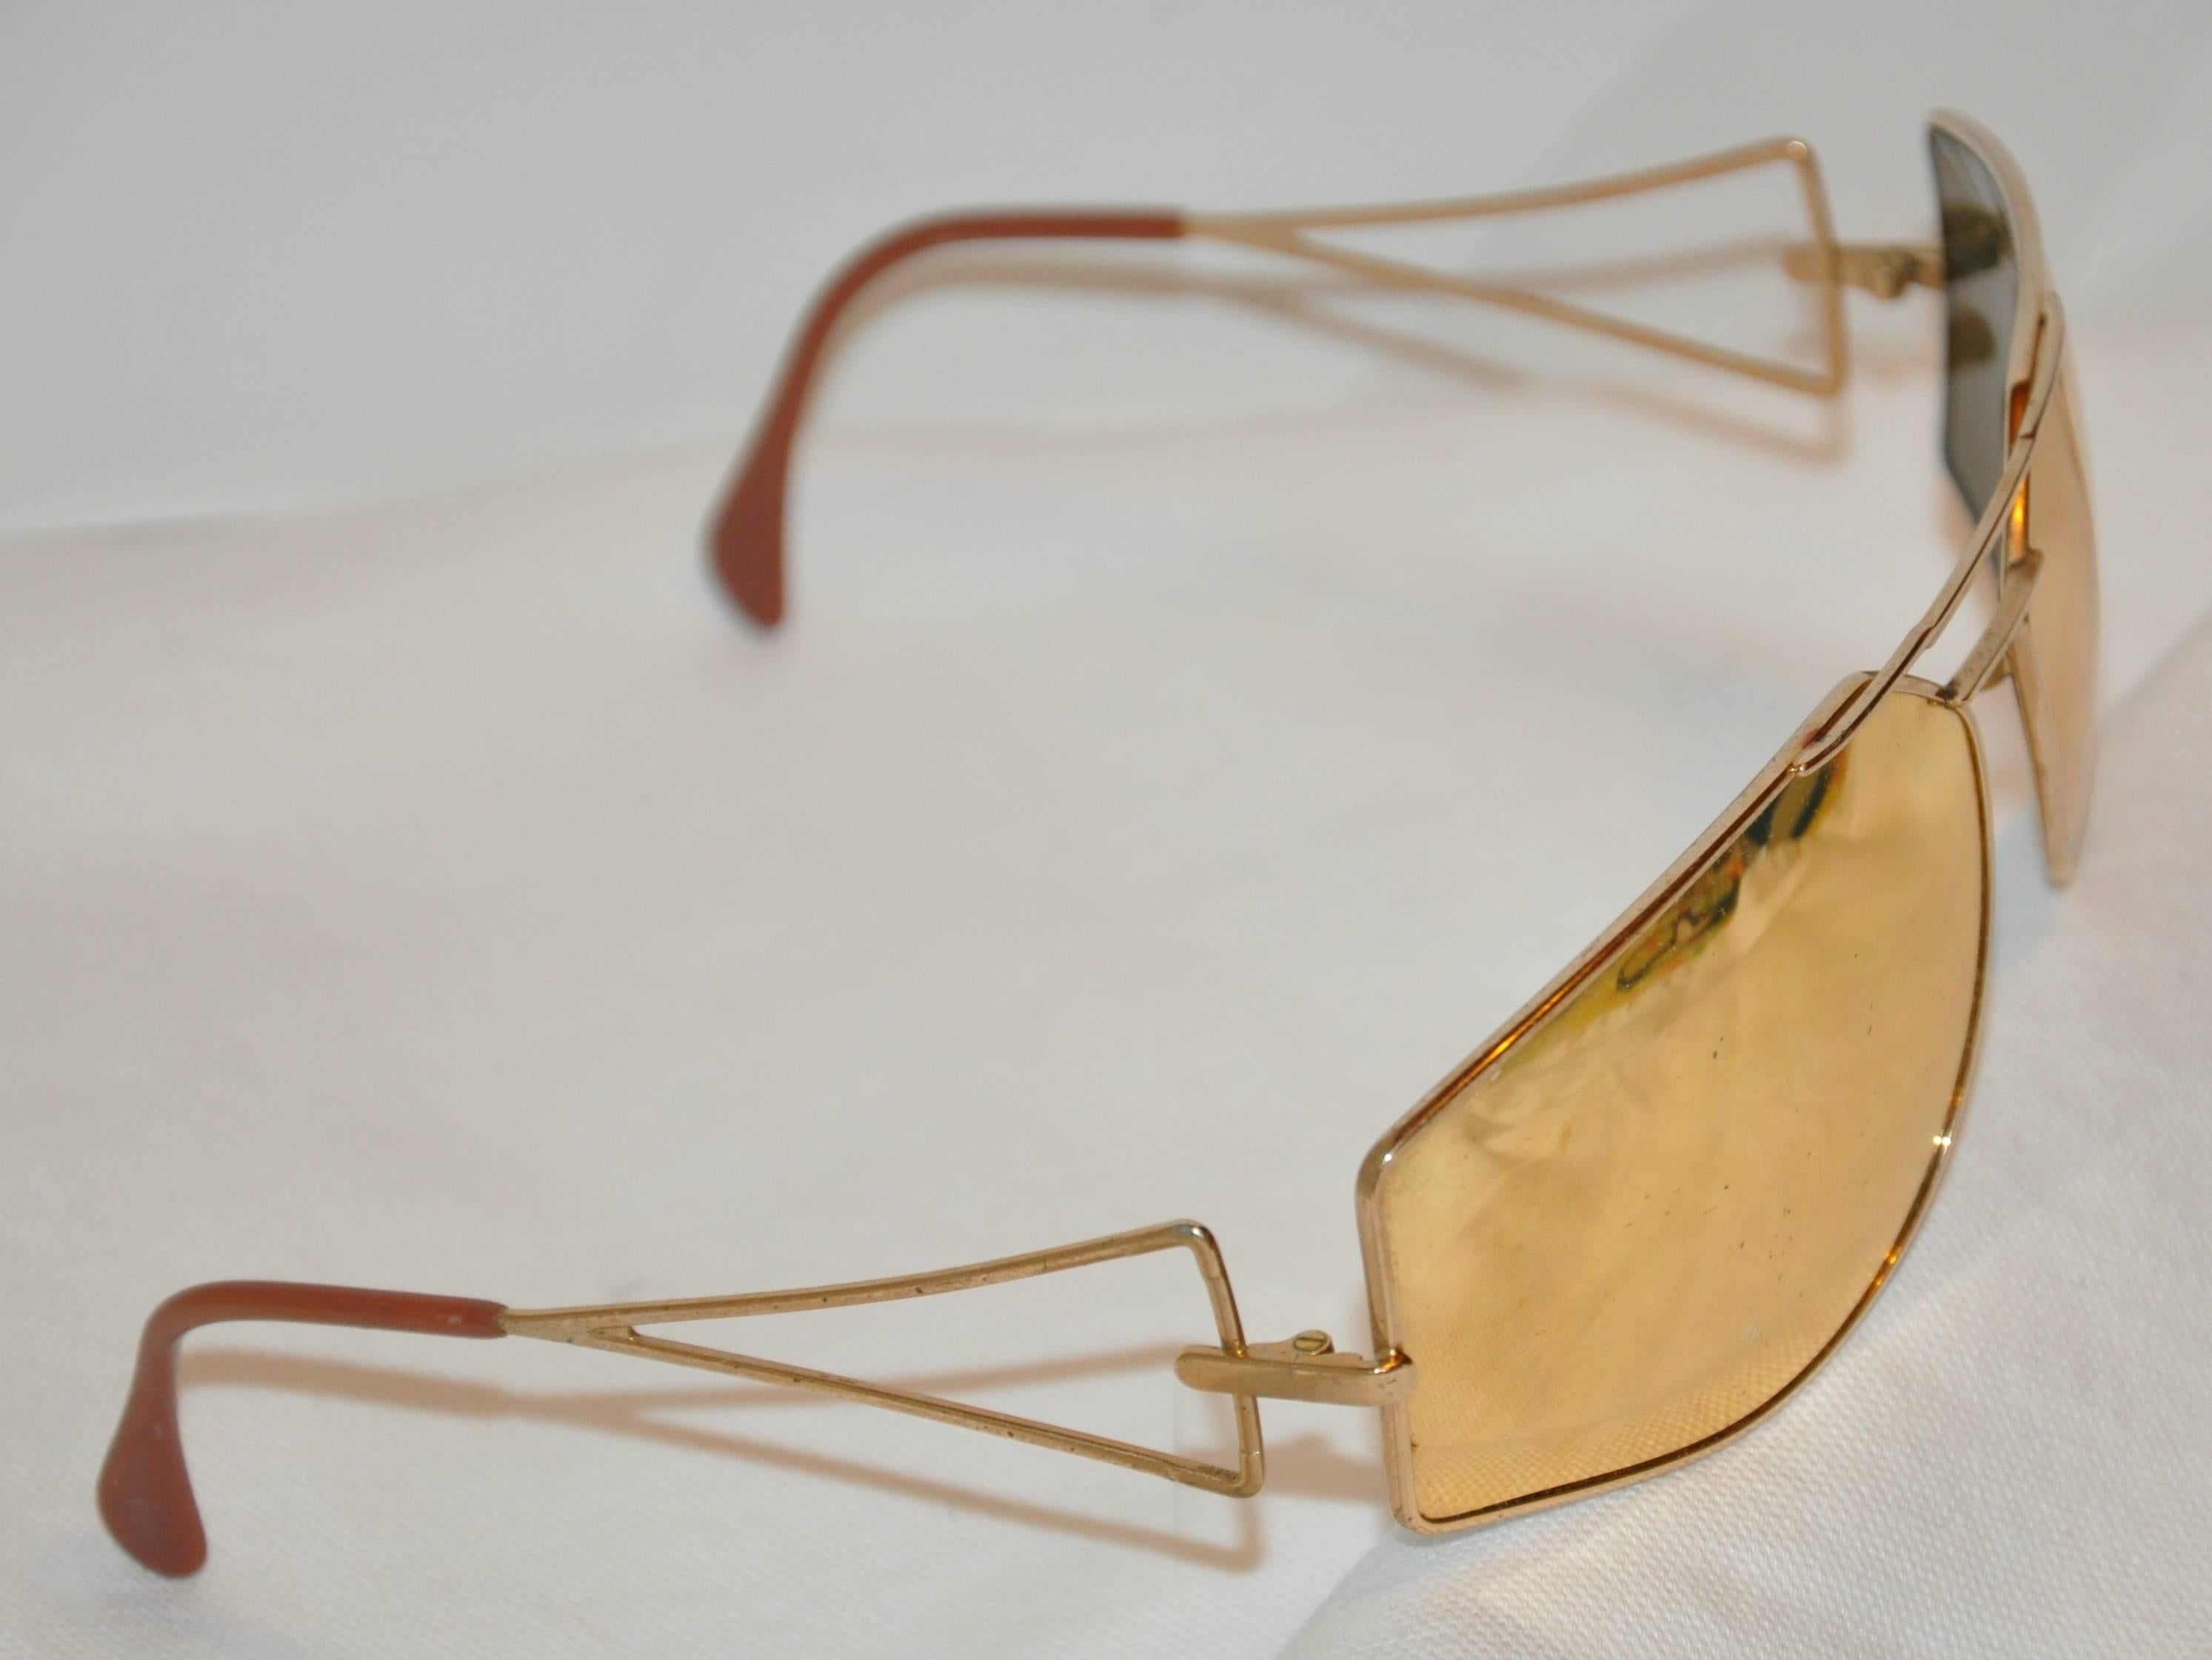        Les lunettes de soleil Silhouette à large monture en vermeil doré sont dotées d'une lentille miroir dorée et mesurent 5 5/8 pouces à l'avant. La hauteur mesure 2 pouces, avec des bras de 4 1/2 de longueur. Fabriqué en Autriche.